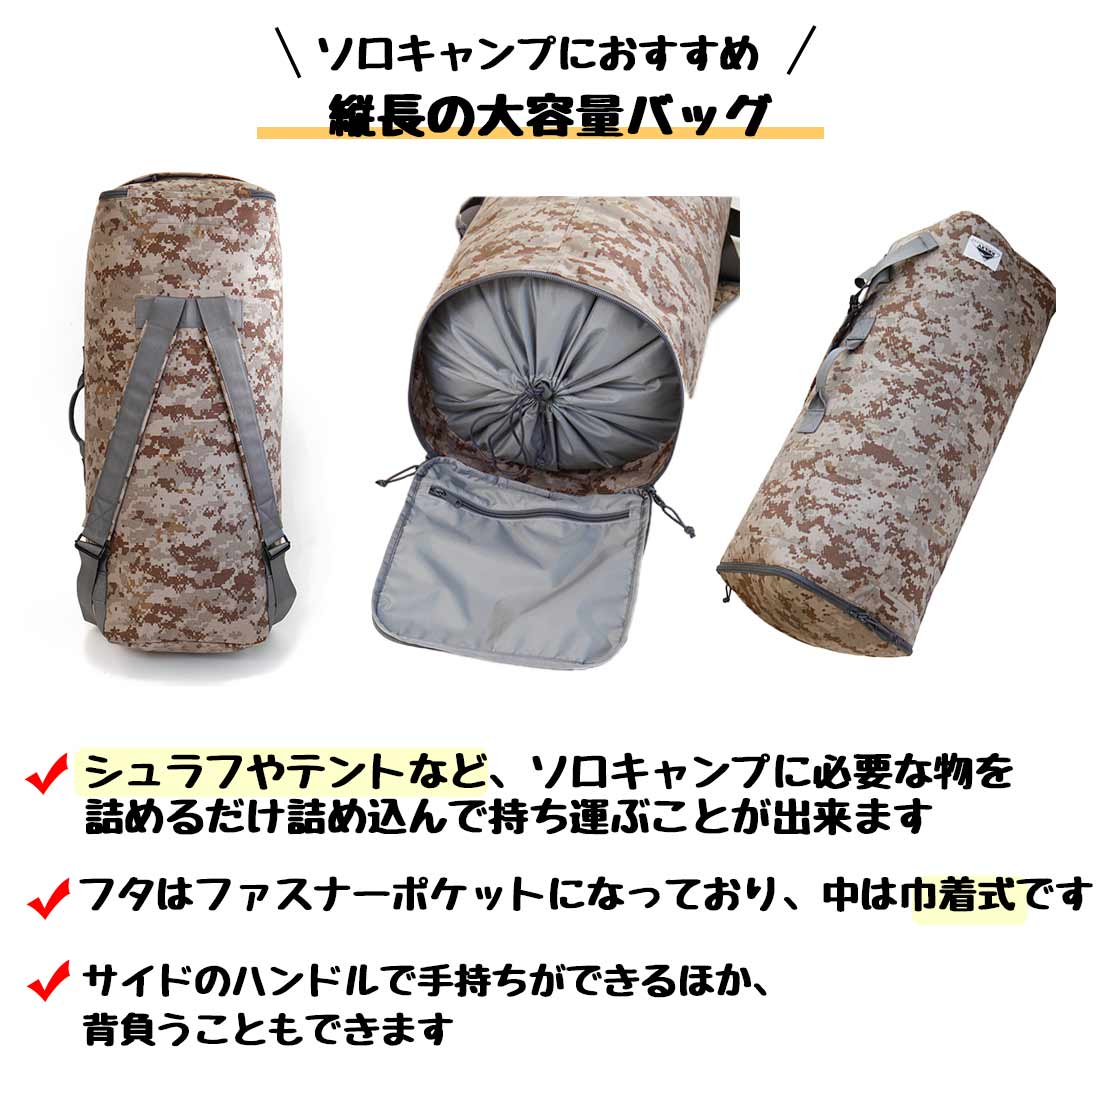 ○★新品 未使用 KELTY ユーティリティケース S ダッフルバッグ キャンプ